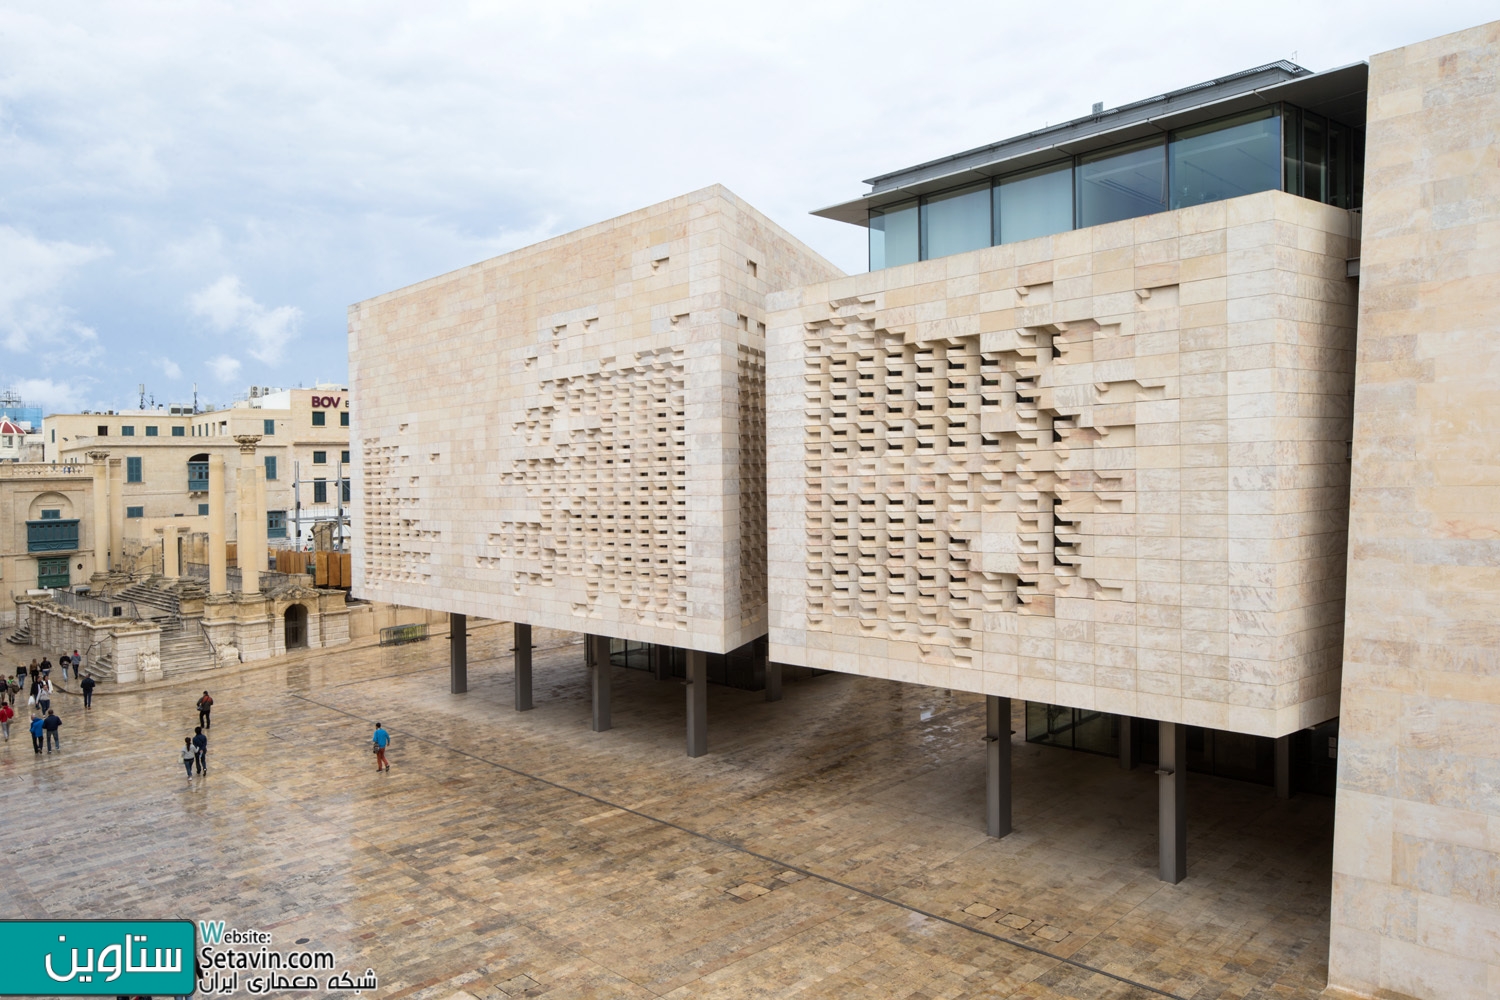 نگاهی به Valletta City Gate اثری از رنزو پیانو